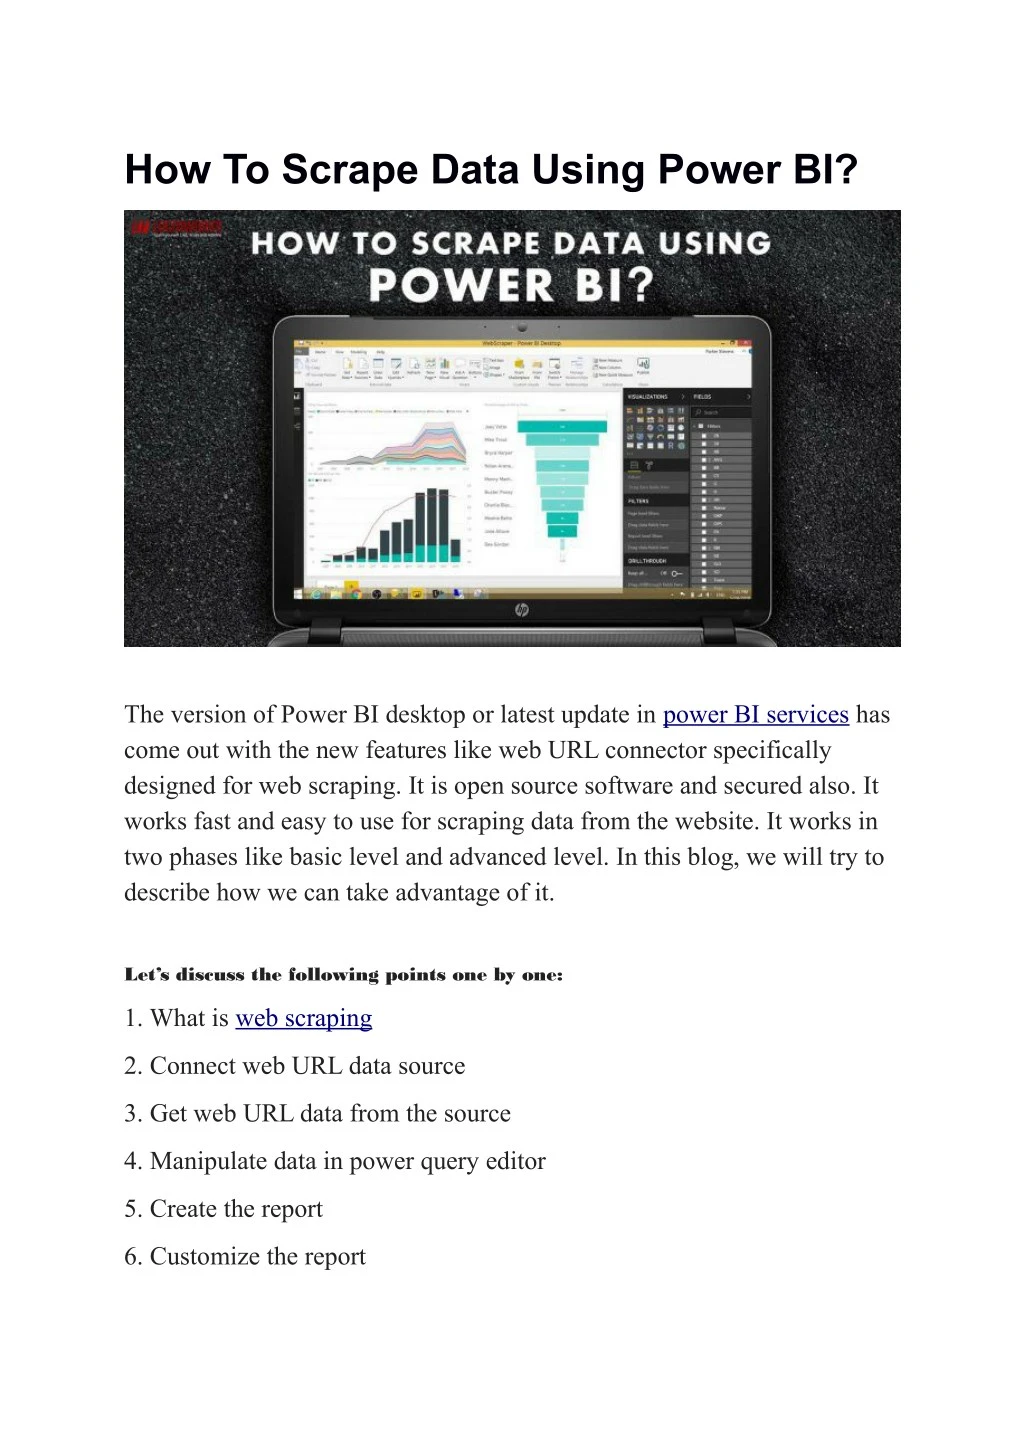 how to scrape data using power bi